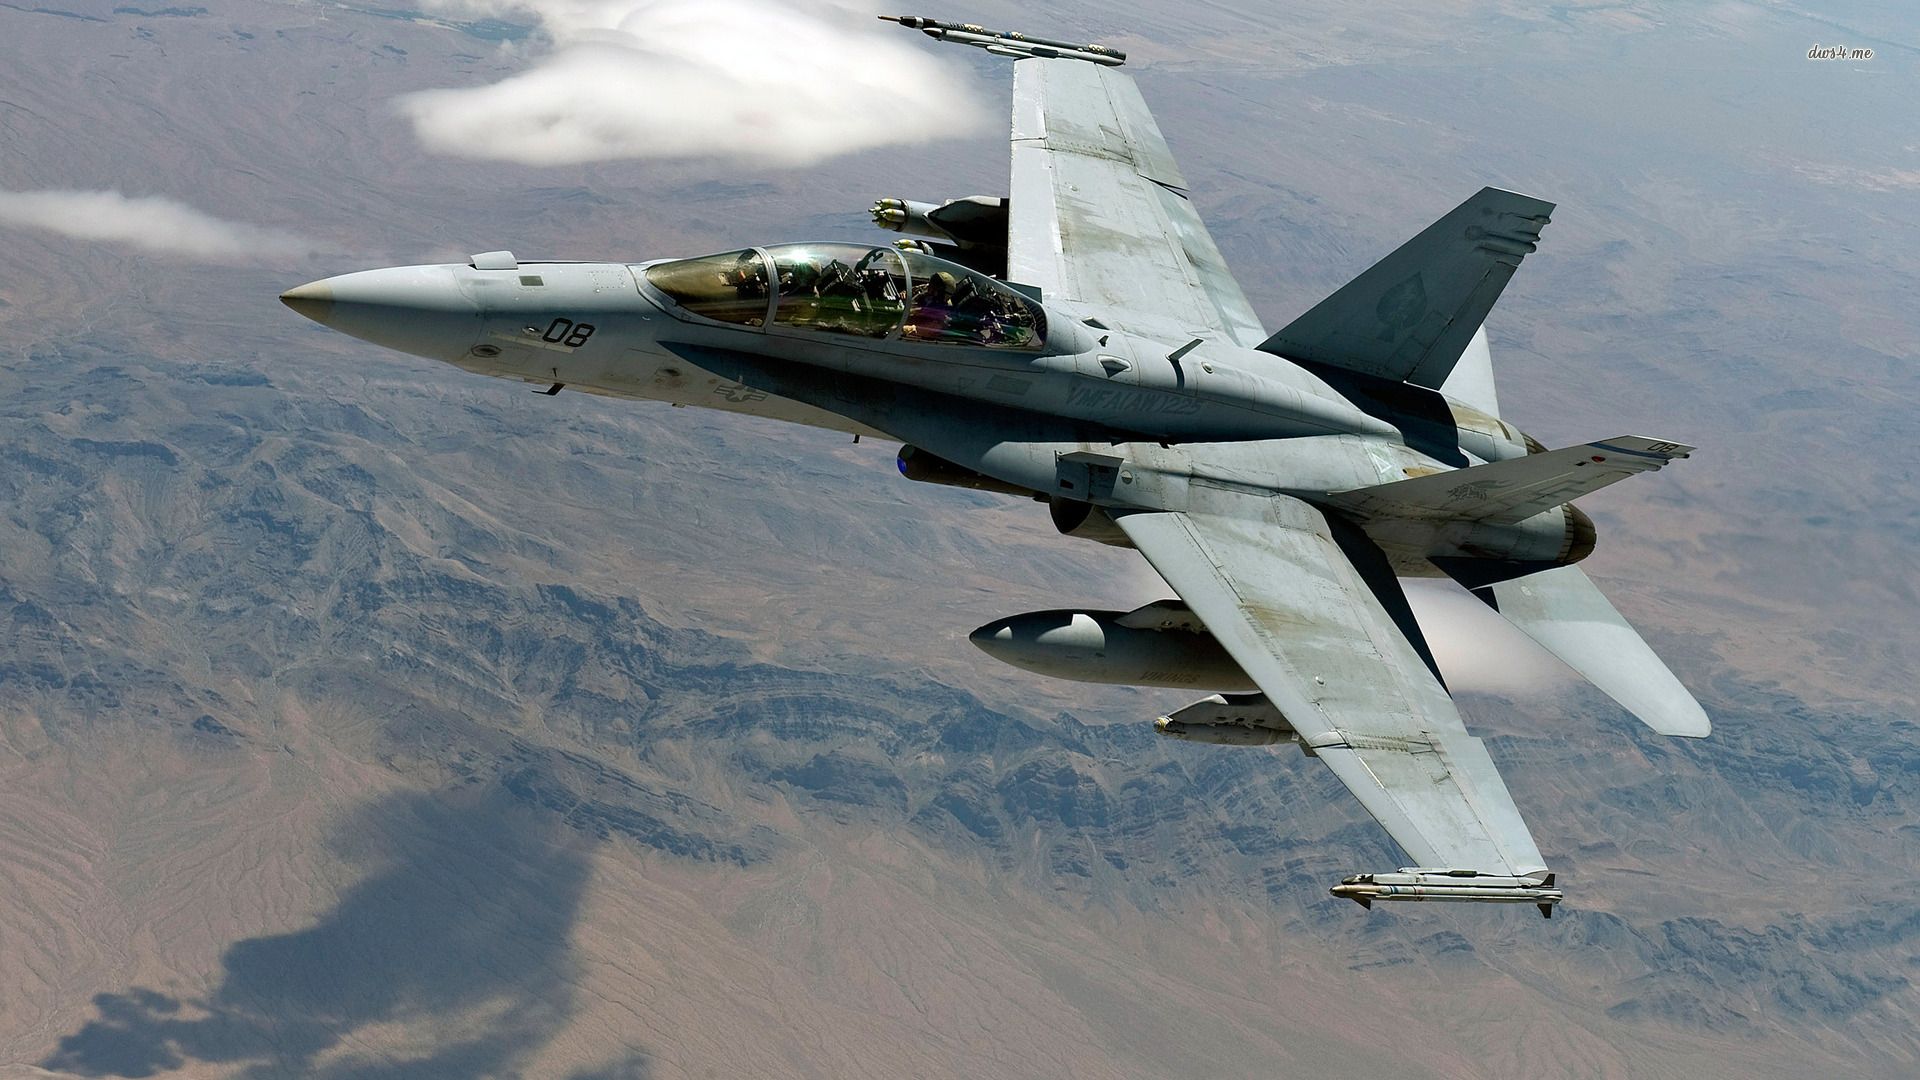 F/A 18 Super Hornet Wallpapers